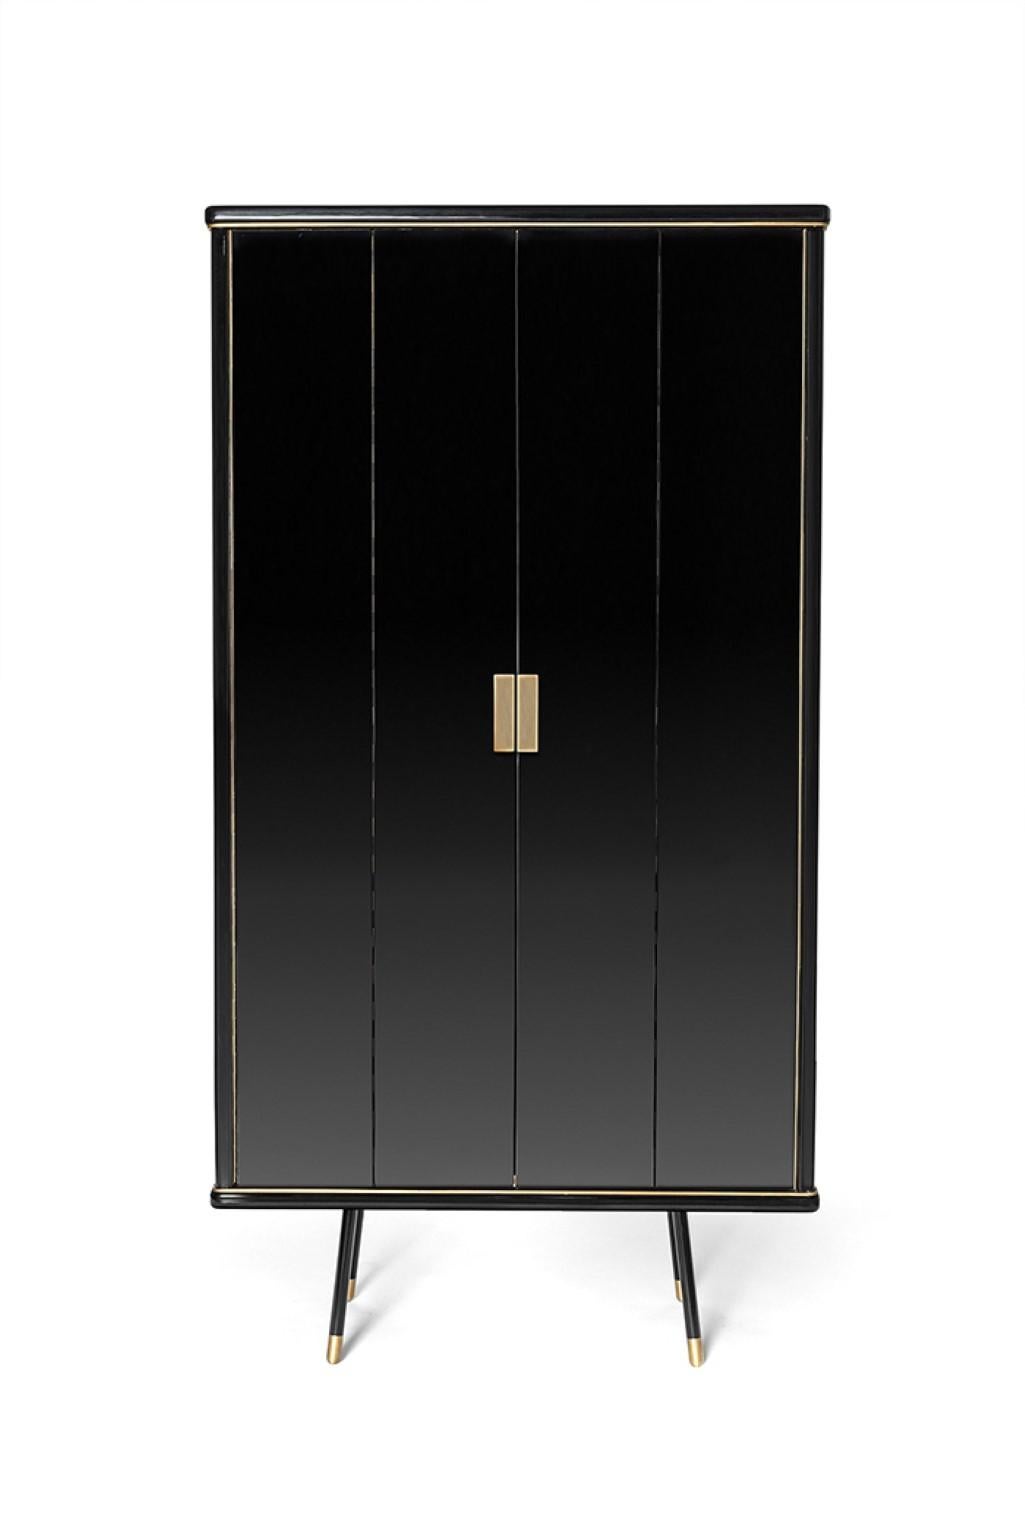 Large cabinet by Magdalena Tekieli
Dimensions: L 100 x D 45 x H 180 cm
Materials: Brass, metal, oak, piano black gloss finish.

